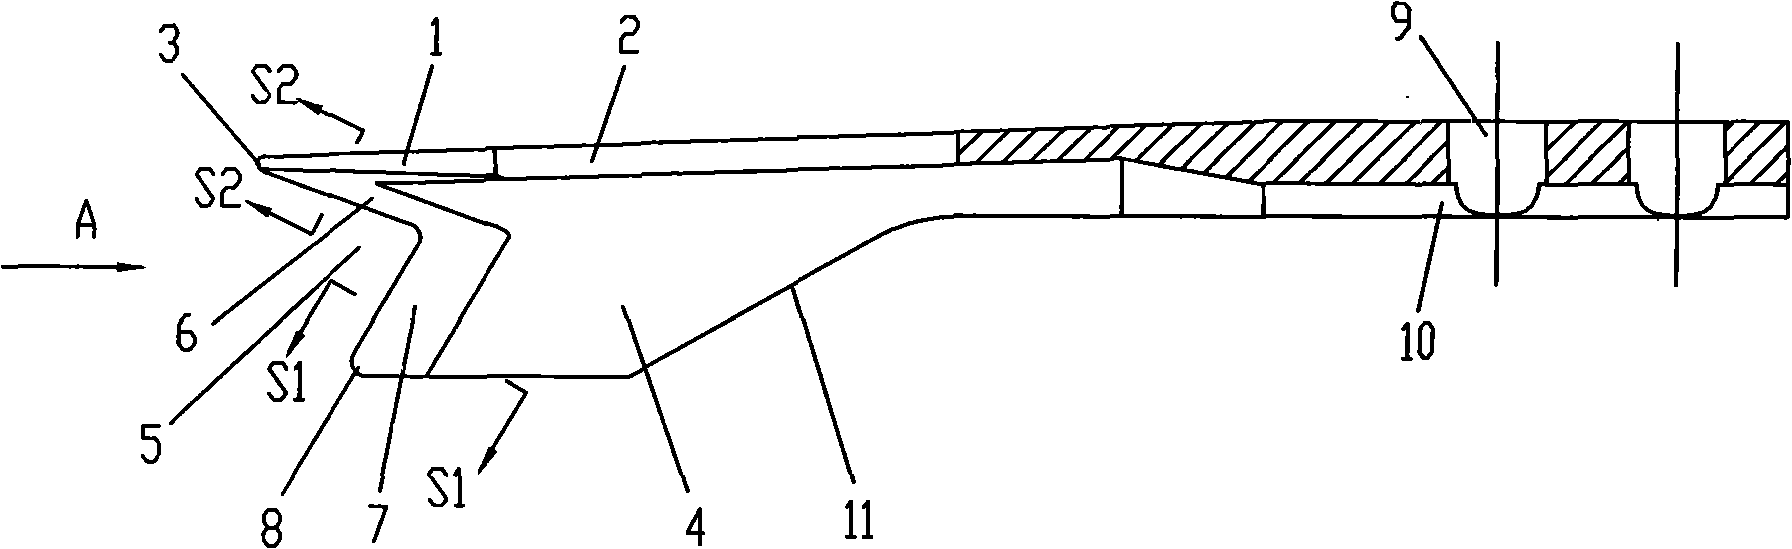 V shaped seedling needle